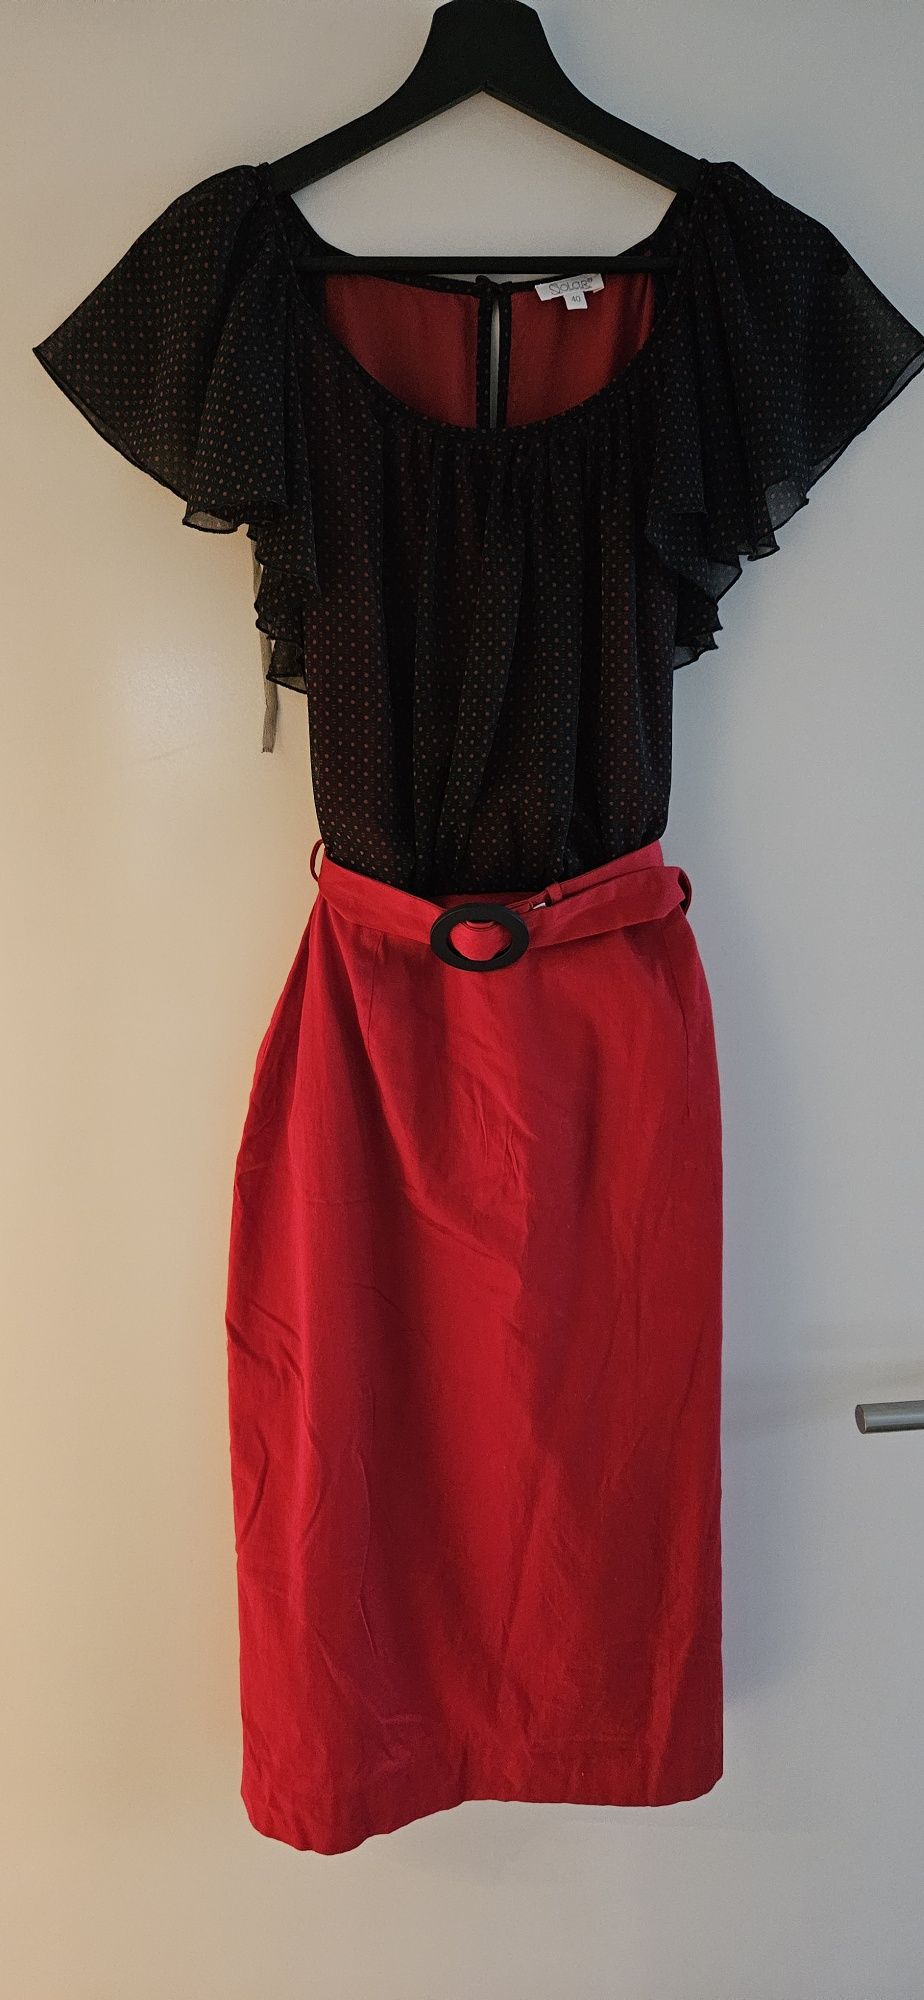 Solar sliczna sukienka czerwona z pasek 40